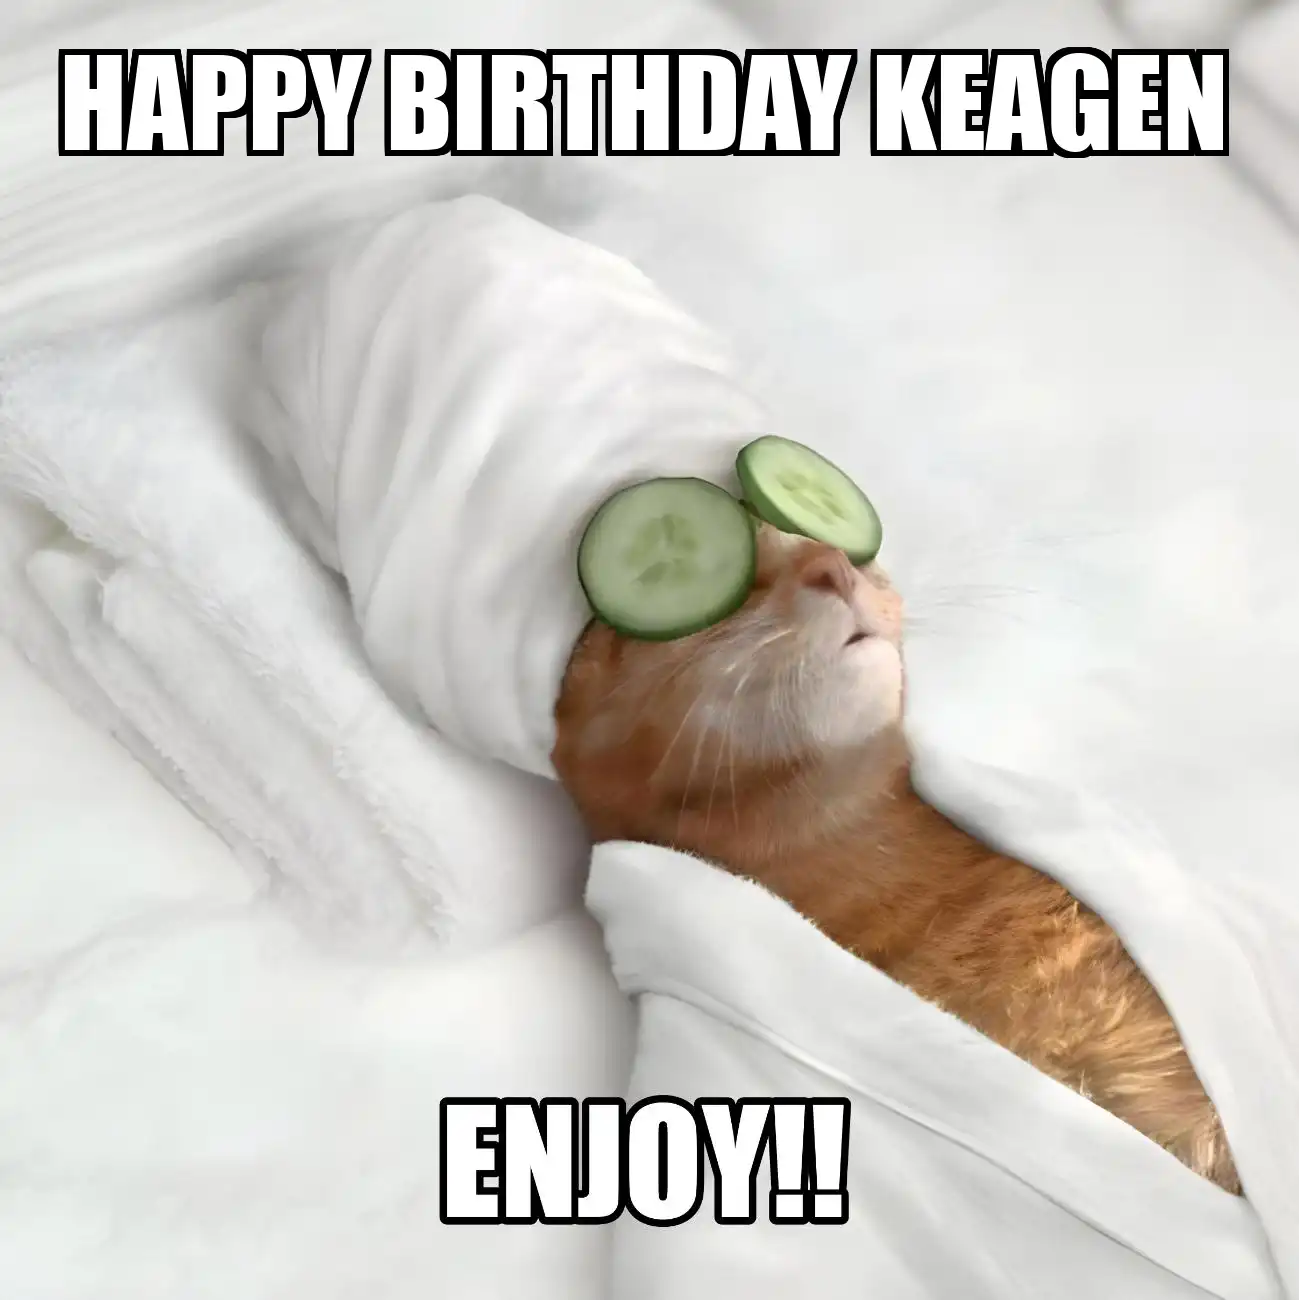 Happy Birthday Keagen Enjoy Cat Meme